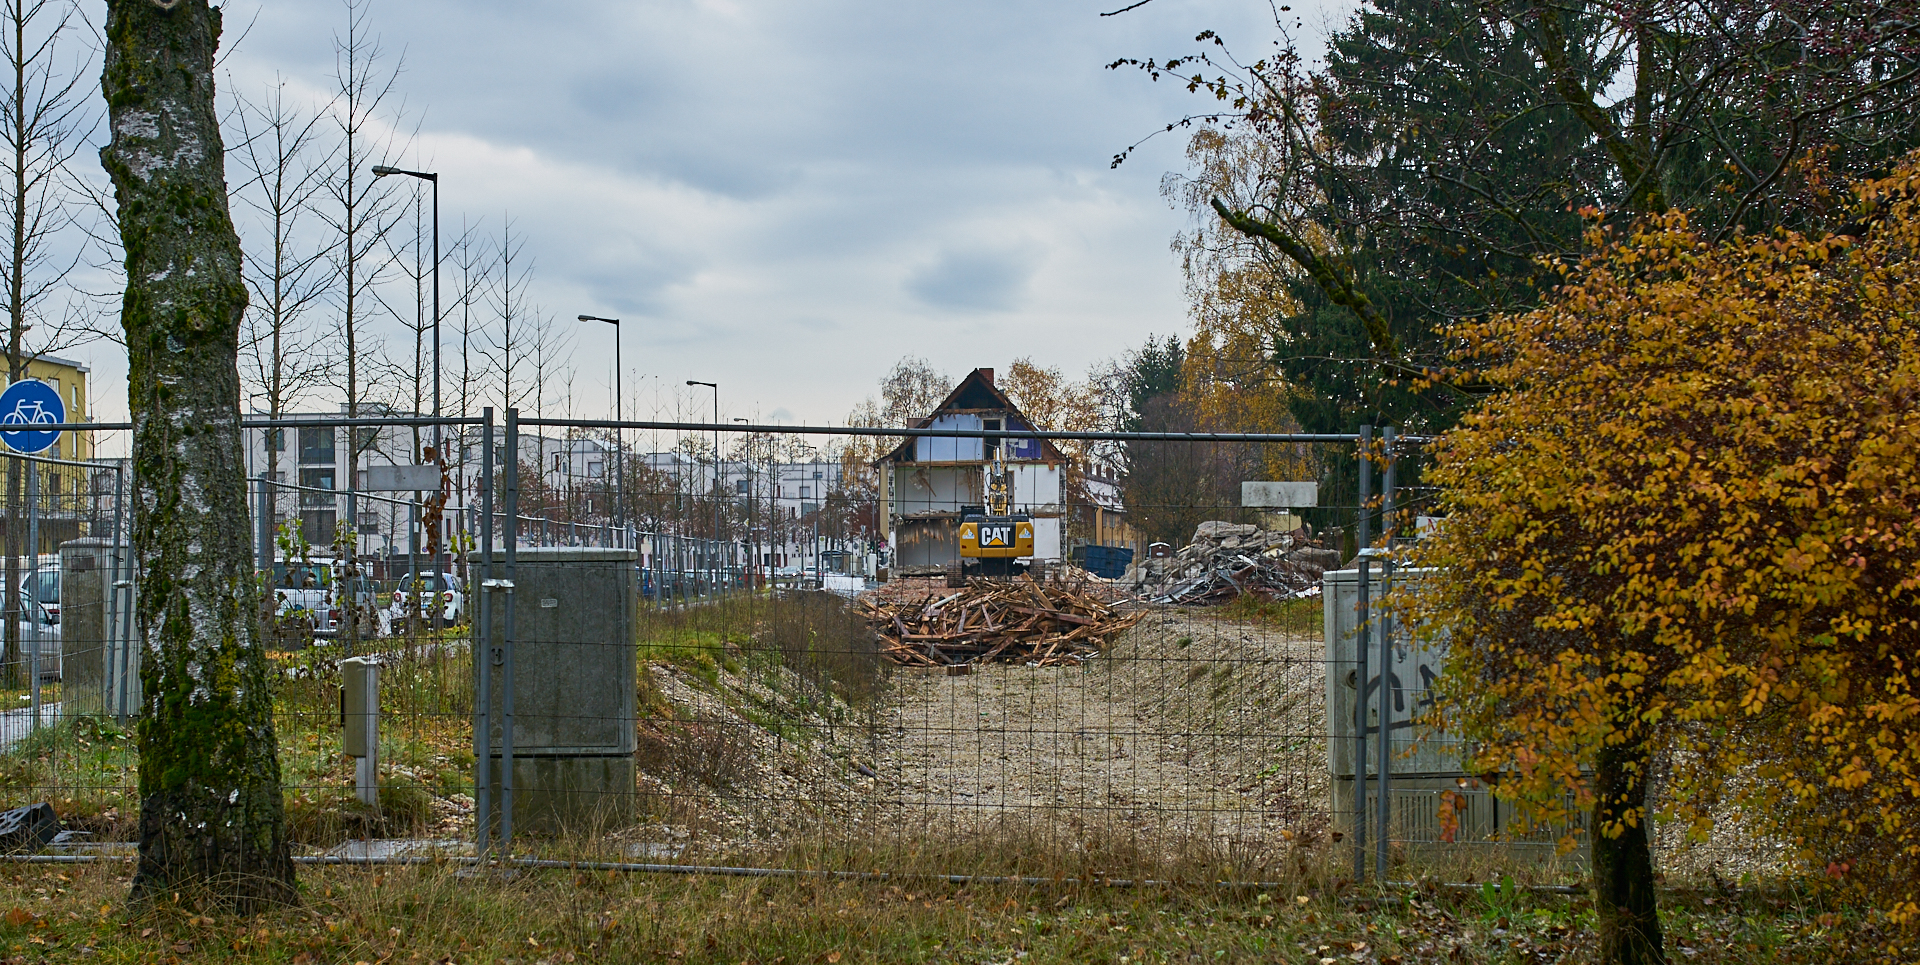 Neuperlach-maikaefersiedlung am 19.11.2016